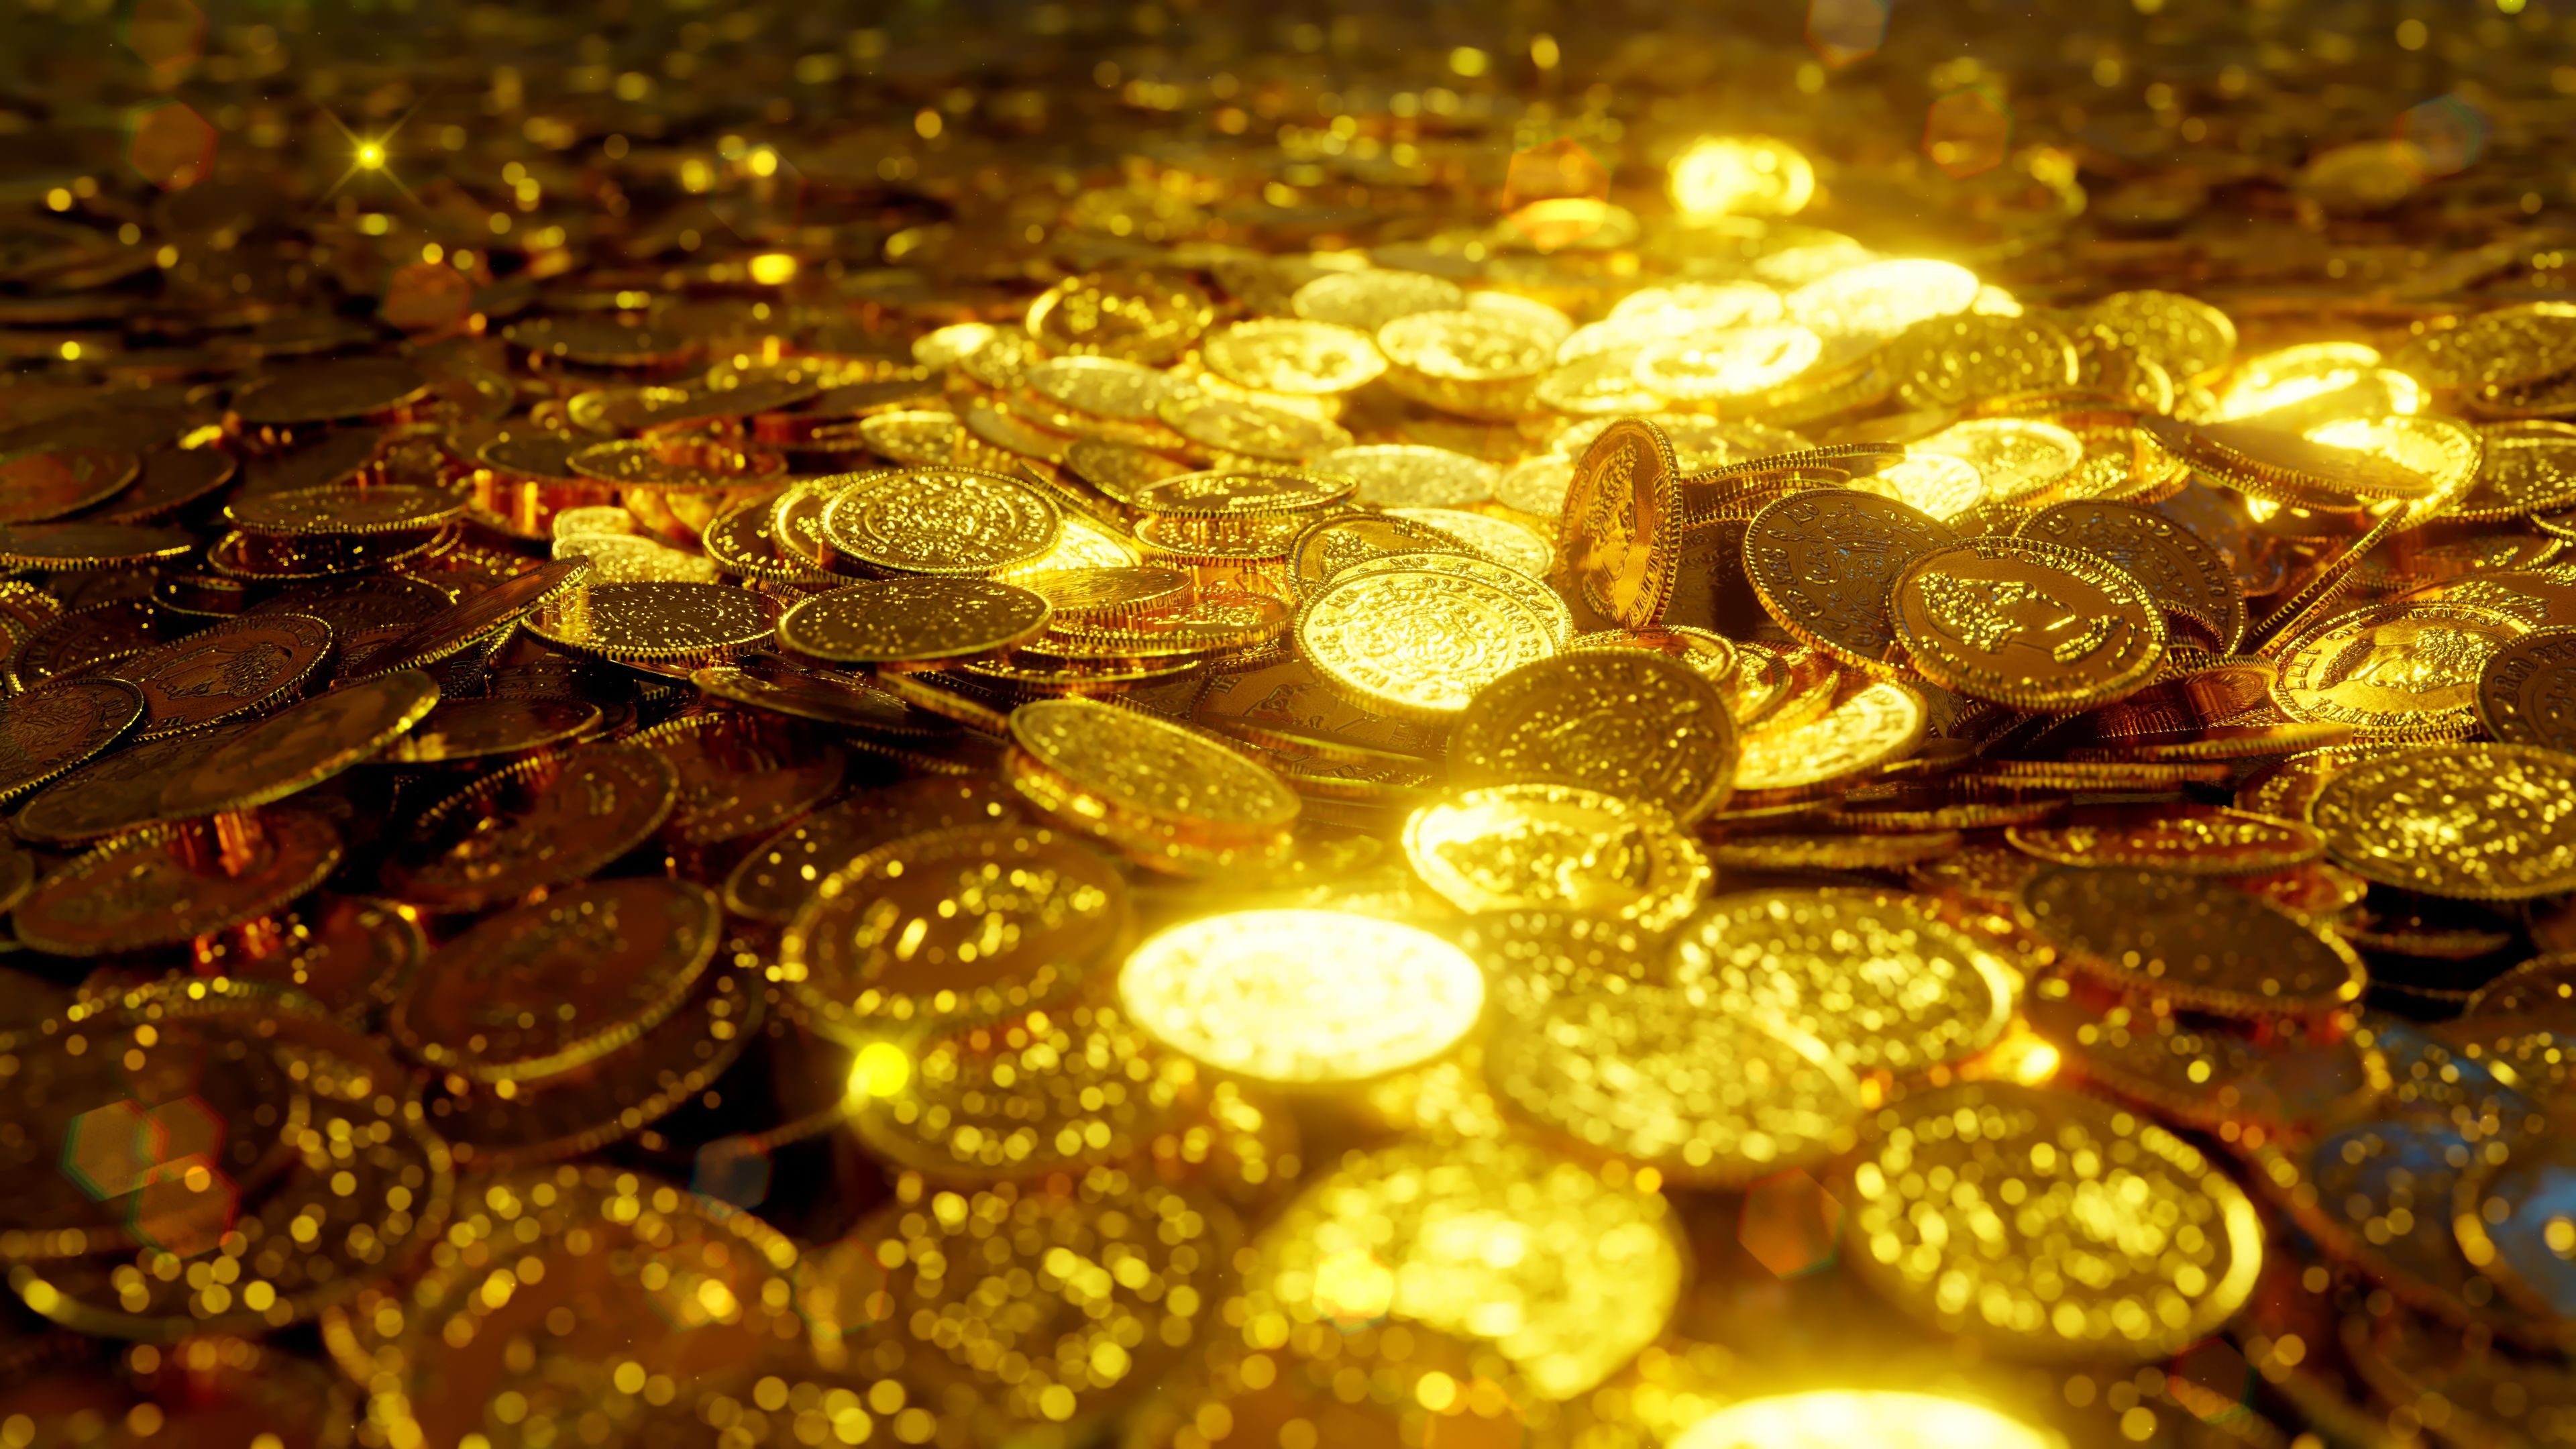 Encuentran un "tesoro" en un búnker: 9 millones de euros en dinero y joyas